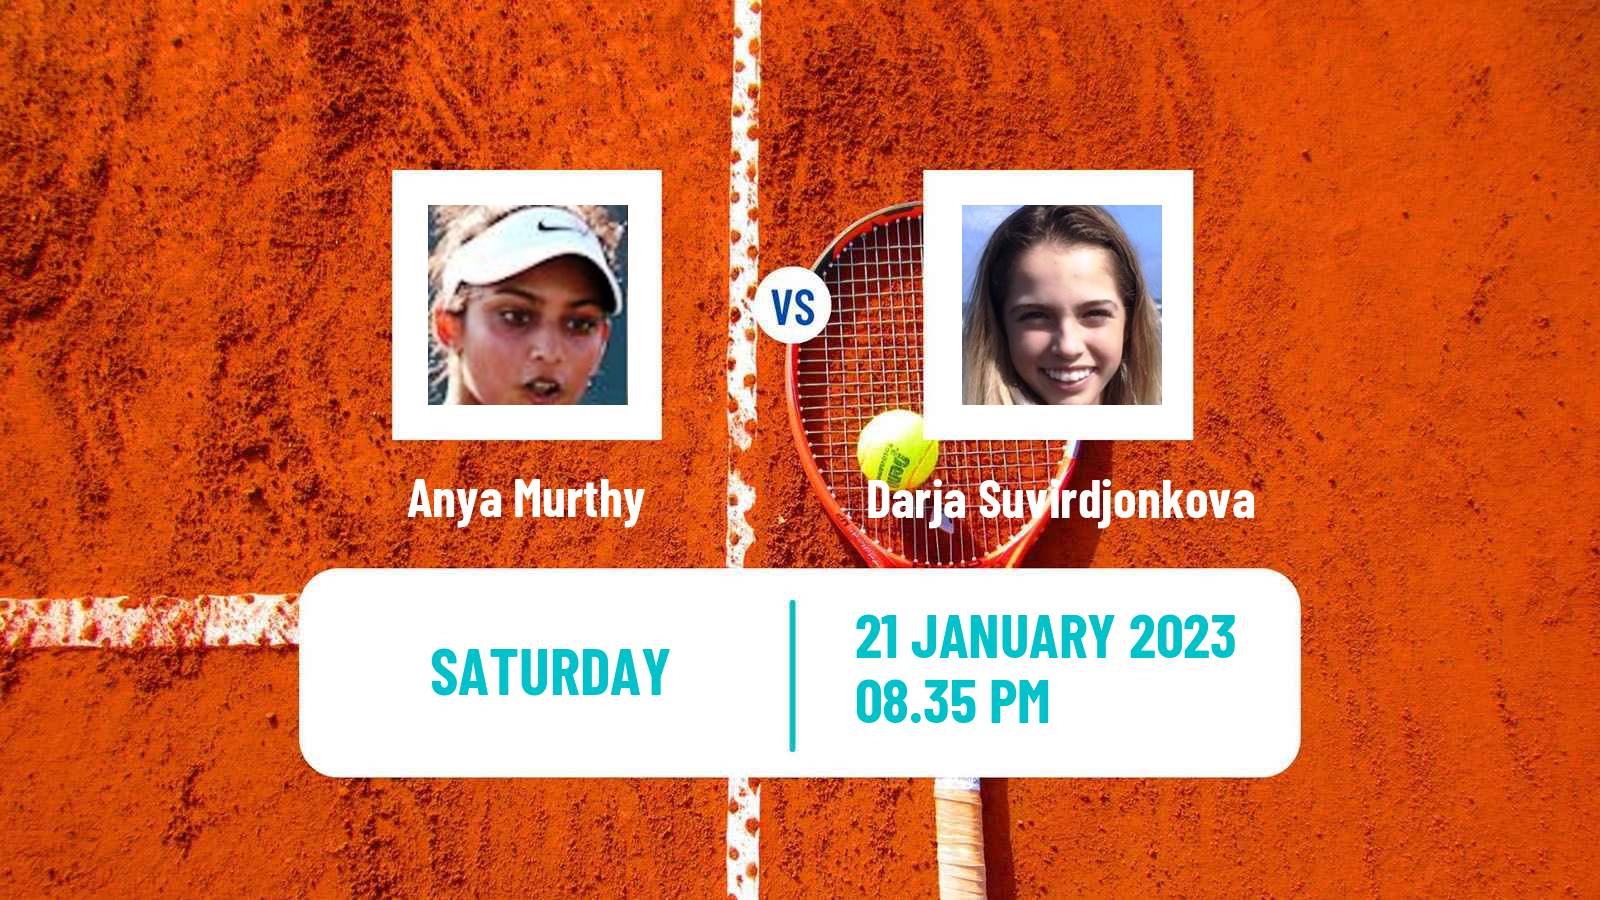 Tennis Girls Singles Australian Open Anya Murthy - Darja Suvirdjonkova